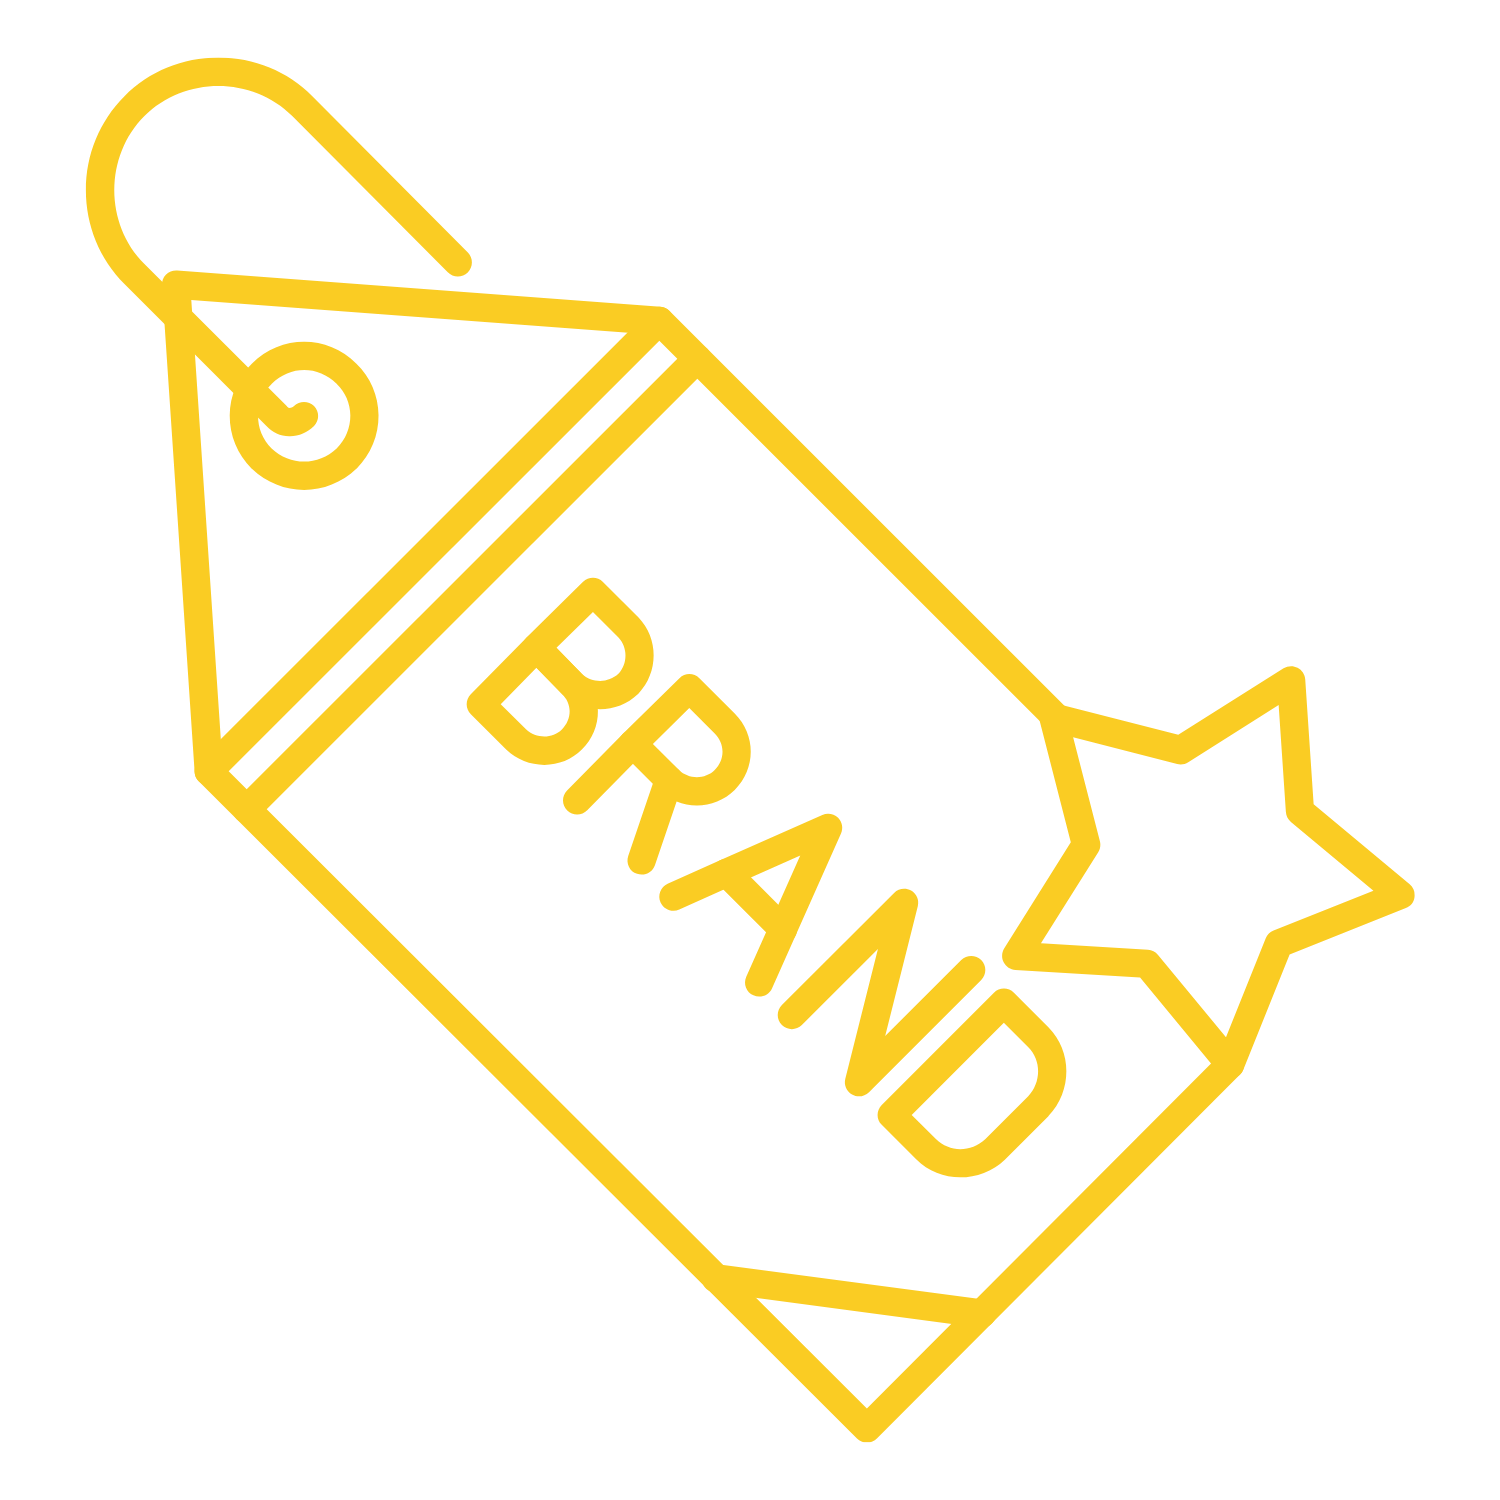 Branded Marketing Materials